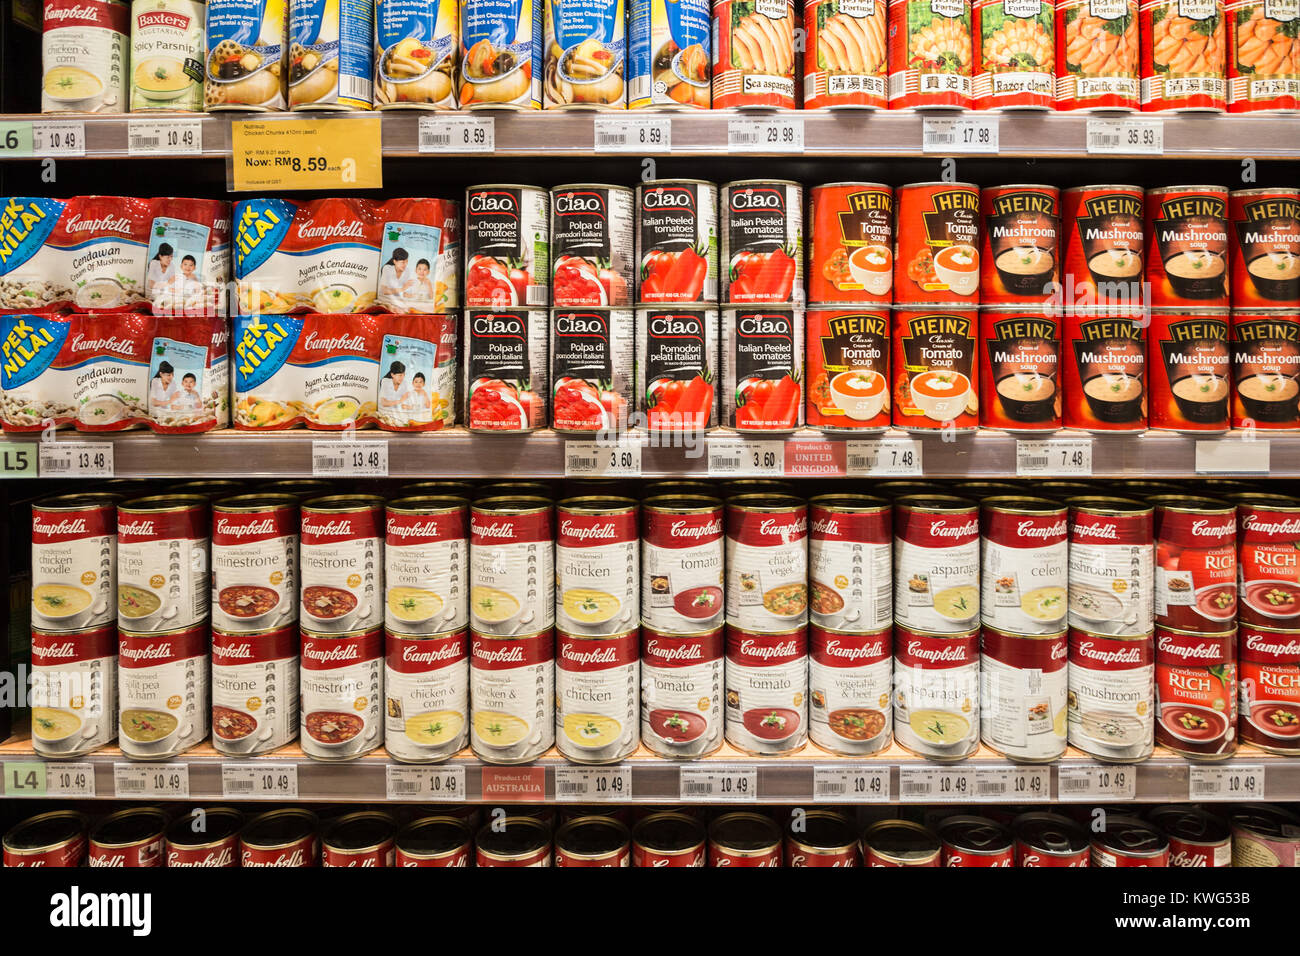 KUALA LUMPUR, Malesia - 22 dicembre 2017: Conserve di zuppe, da Cambell o Heinz tra gli altri, sono visualizzate in uno scaffale di supermercato in Malesia Foto Stock